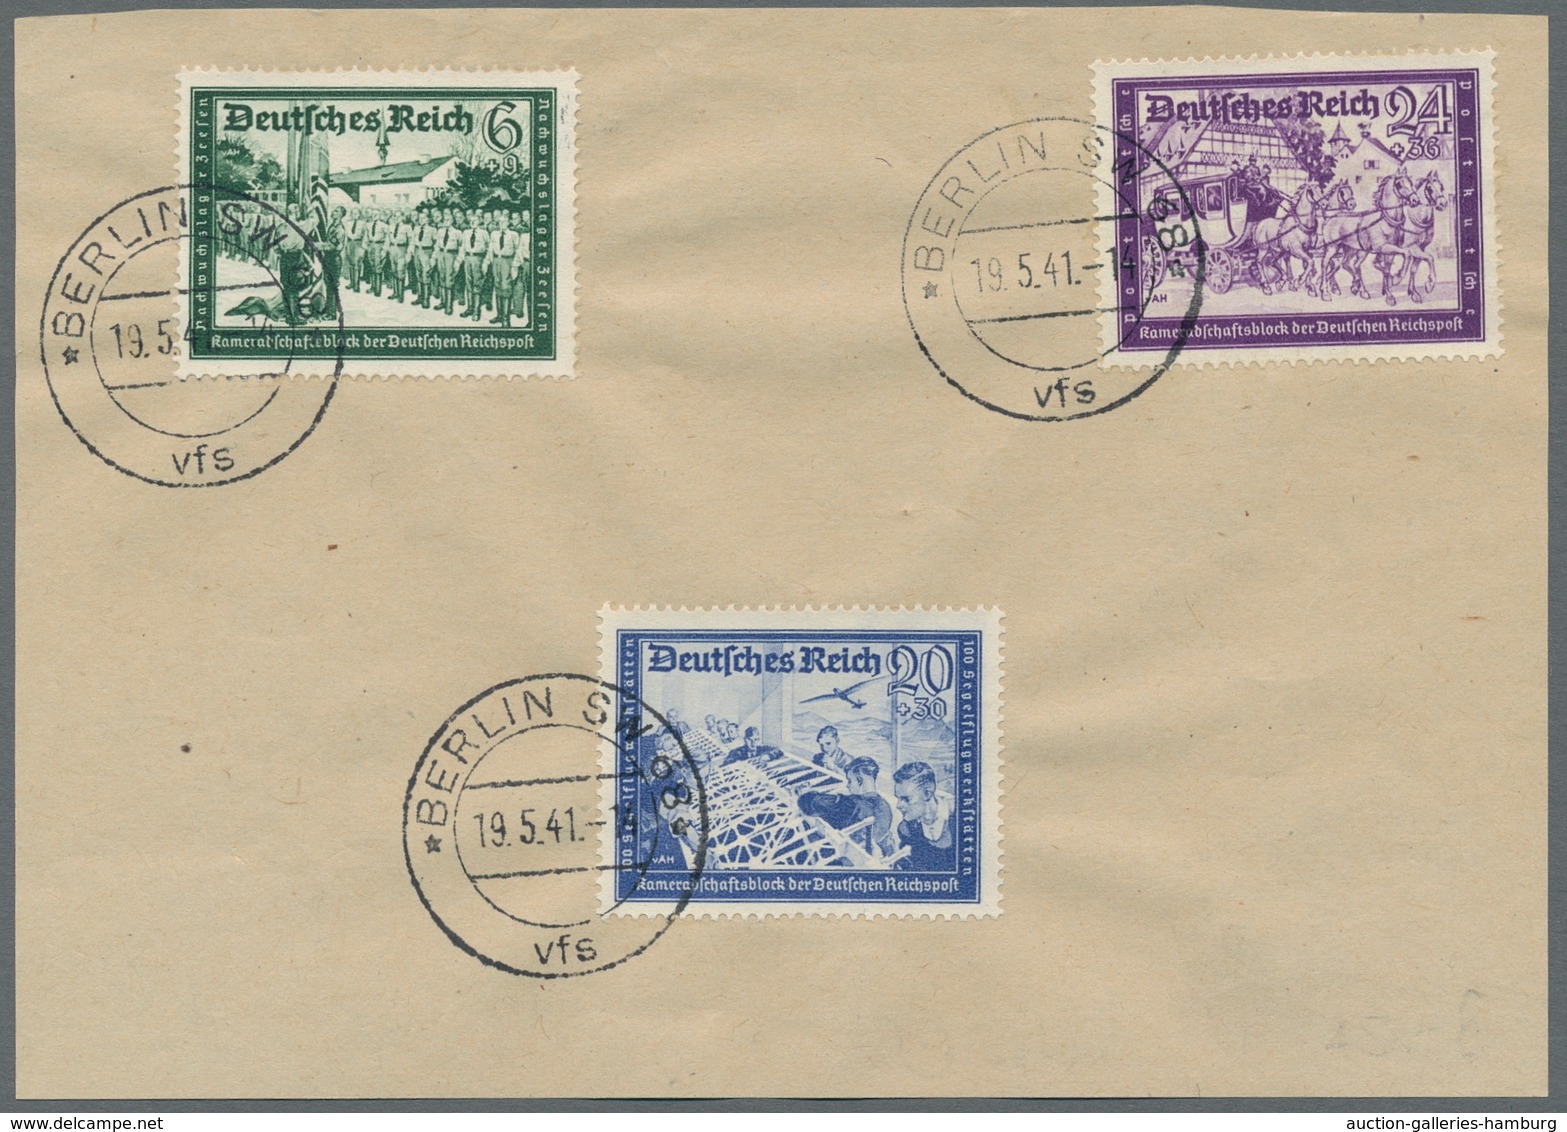 Deutsches Reich - 3. Reich: 1941-1942 Postkameradschaft u. Hitler jeweils kplt. Sätze auf Stempelvor